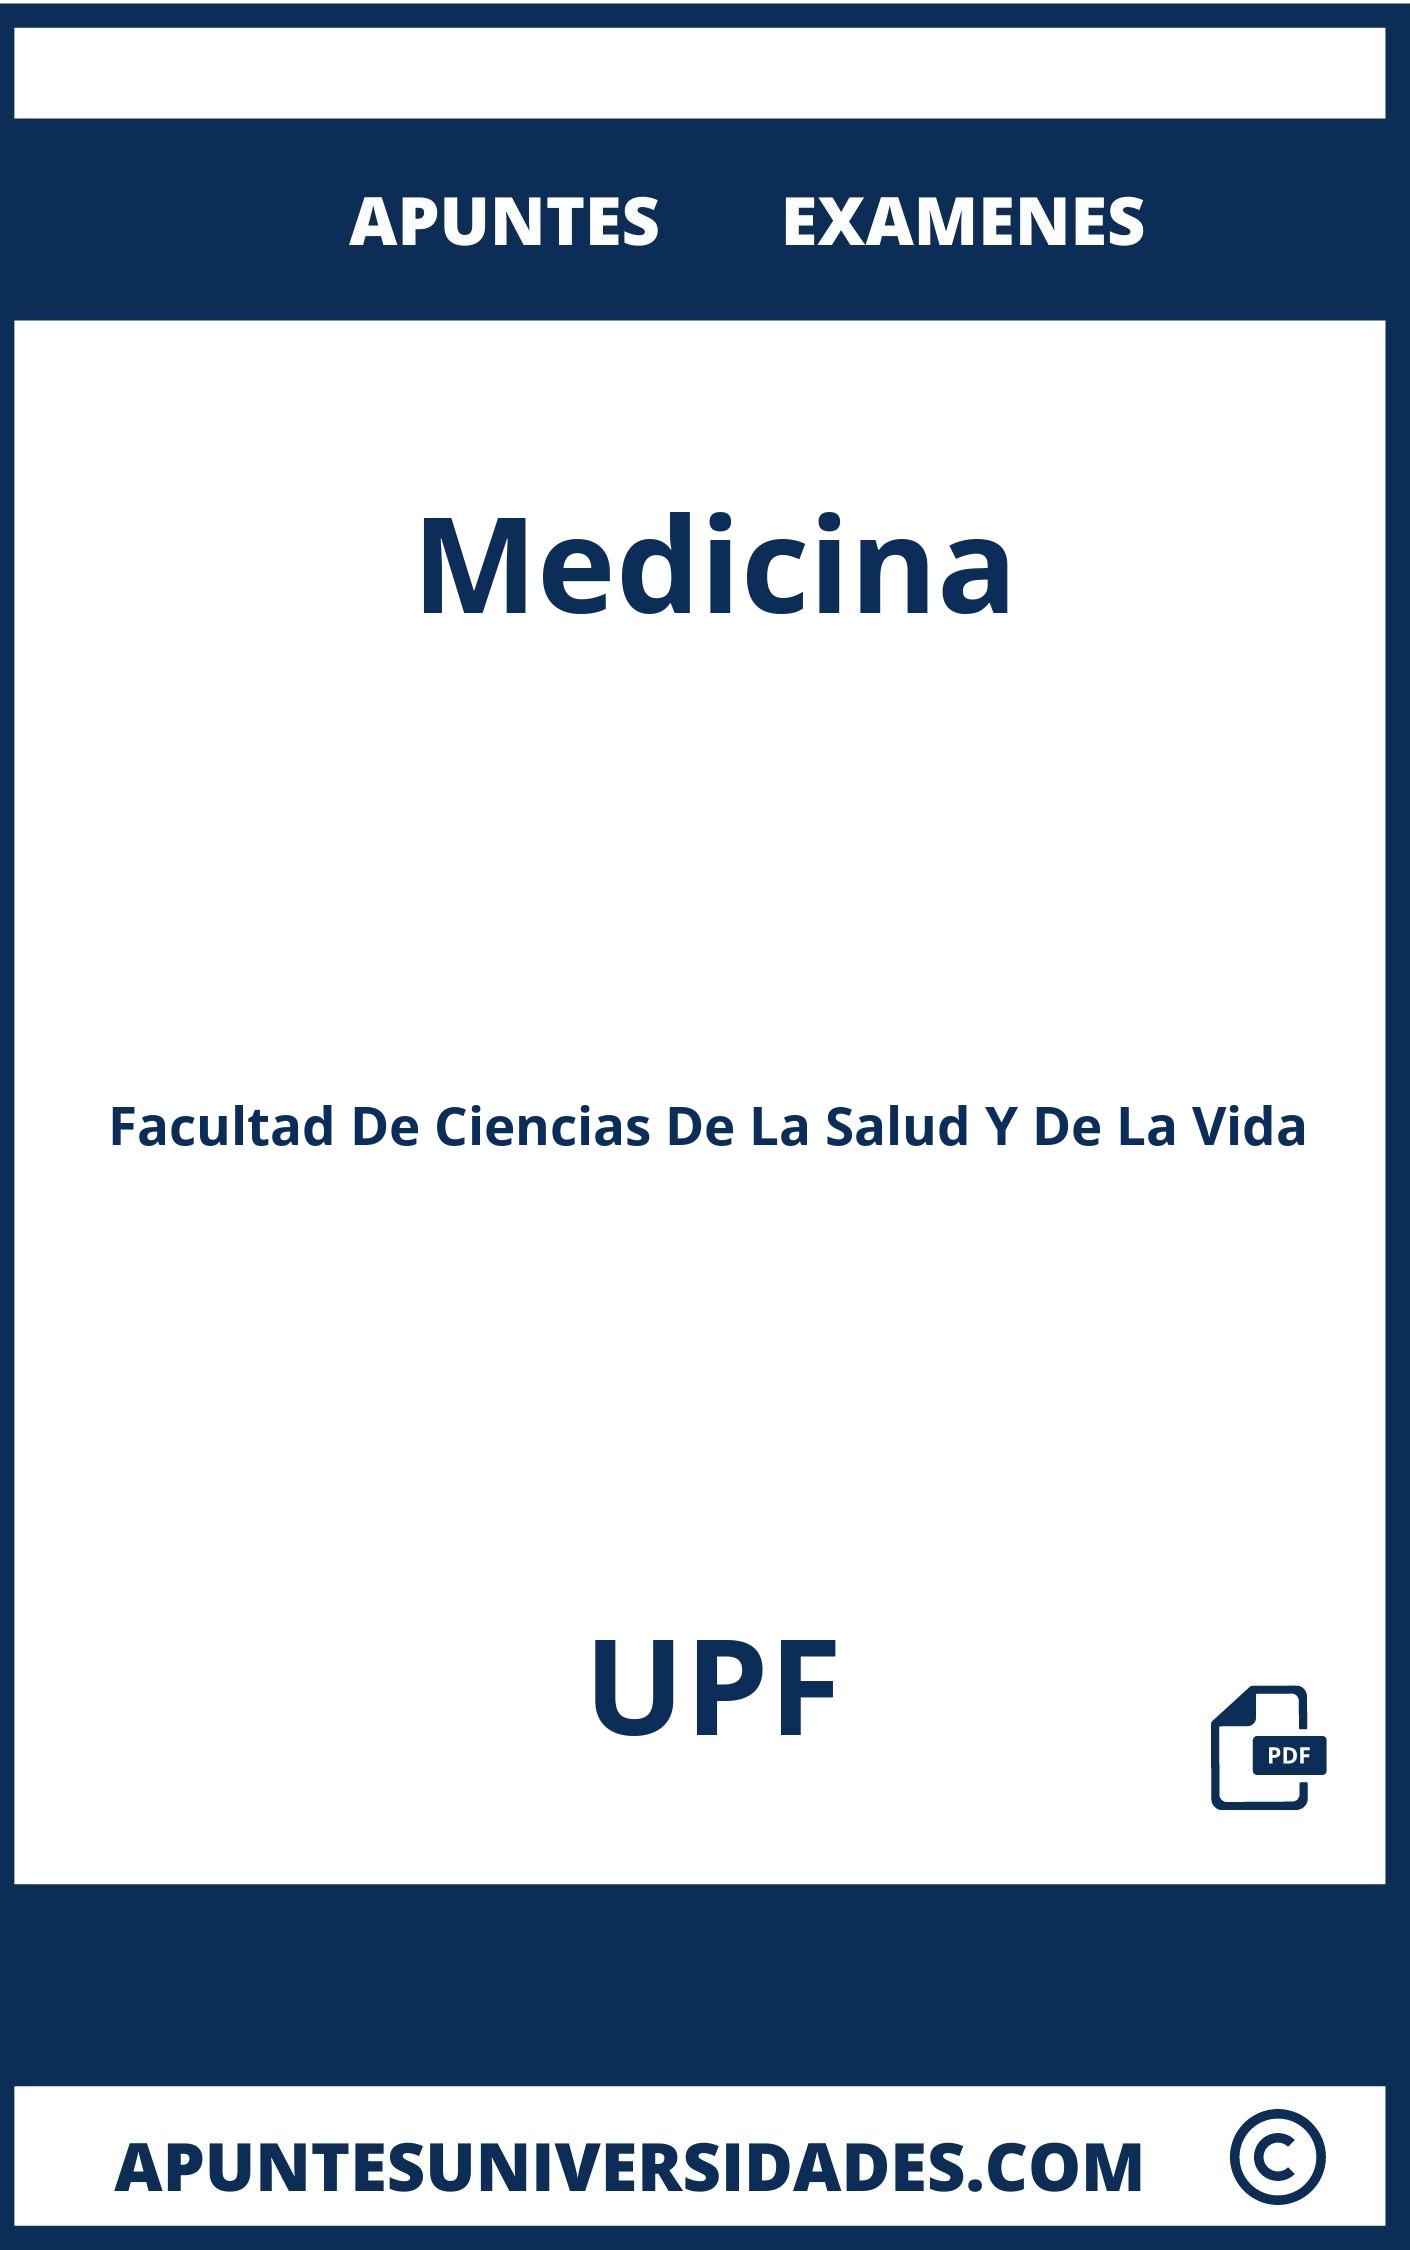 Apuntes Medicina UPF y Examenes